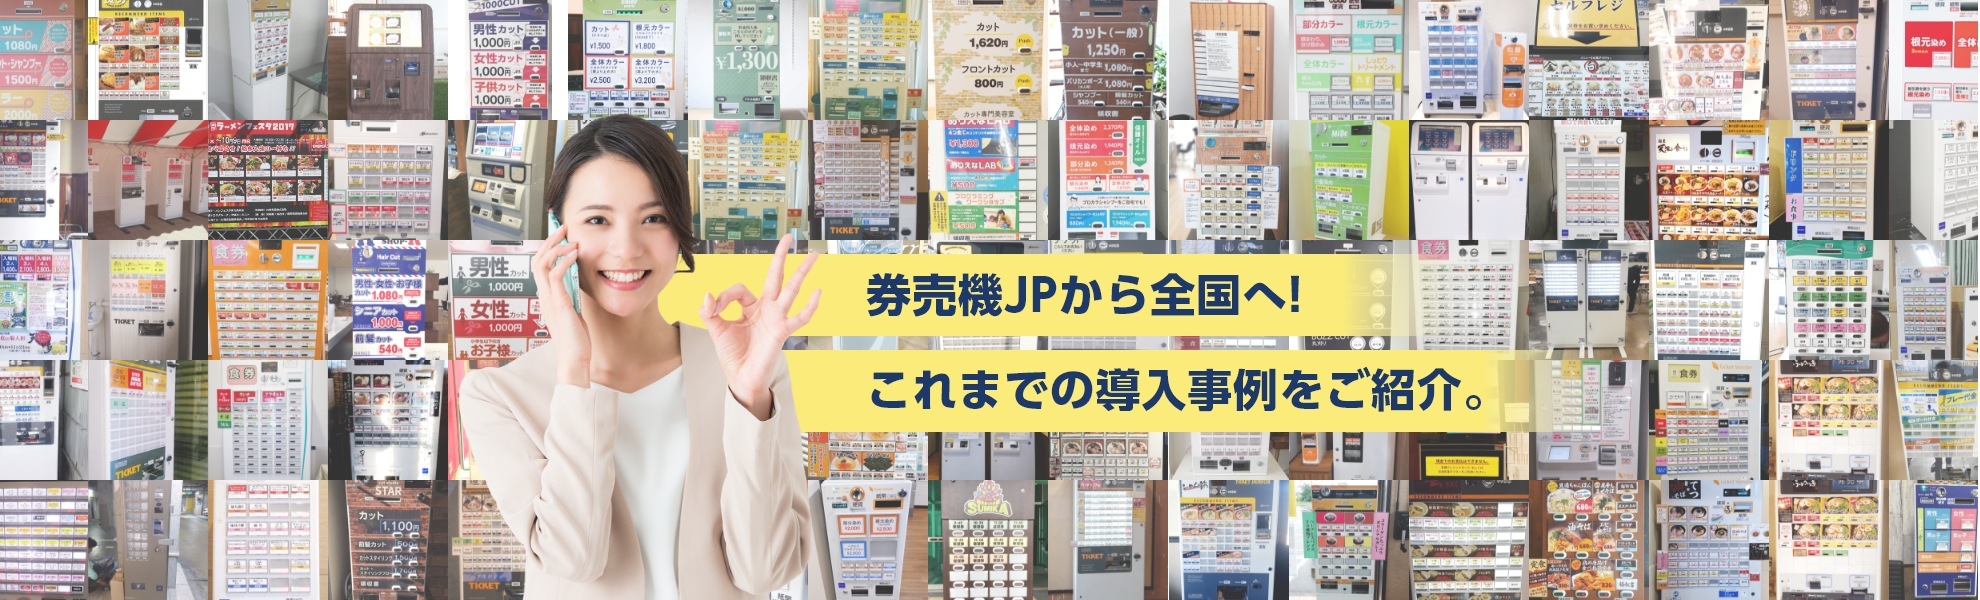 東京都のツーリズムEXPO2018様にレンタル券売機を導入させていただきましたの紹介ビジュアル